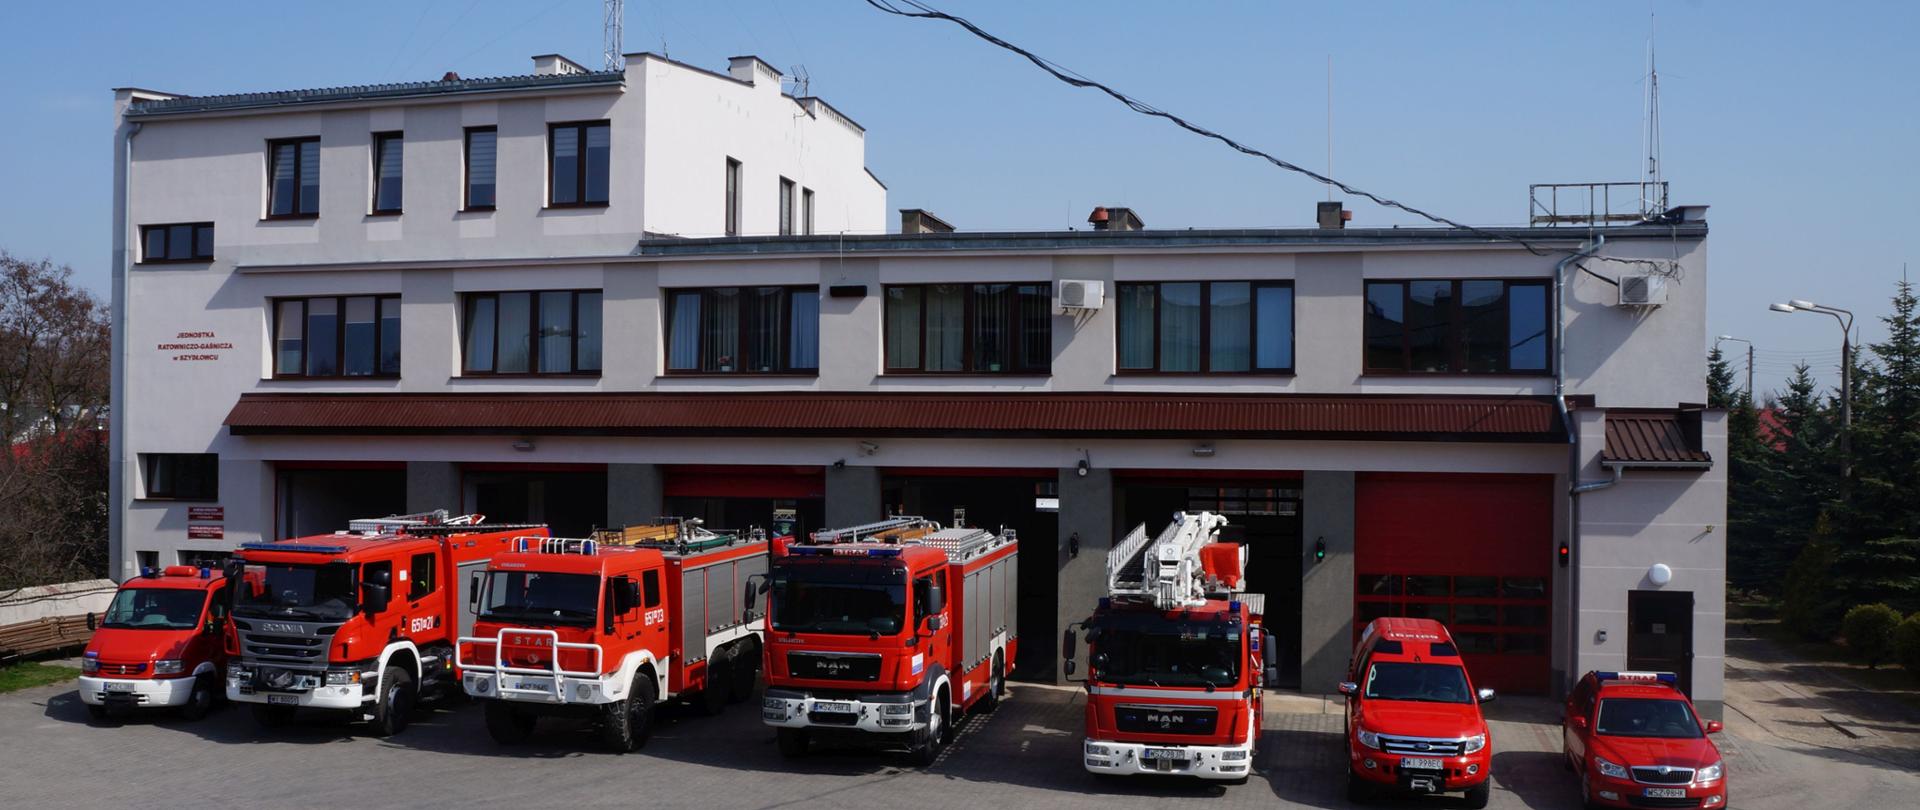 Zdjęcie Komendy Powiatowej Państwowej Straży Pożarnej w Szydłowcu wraz z pojazdami